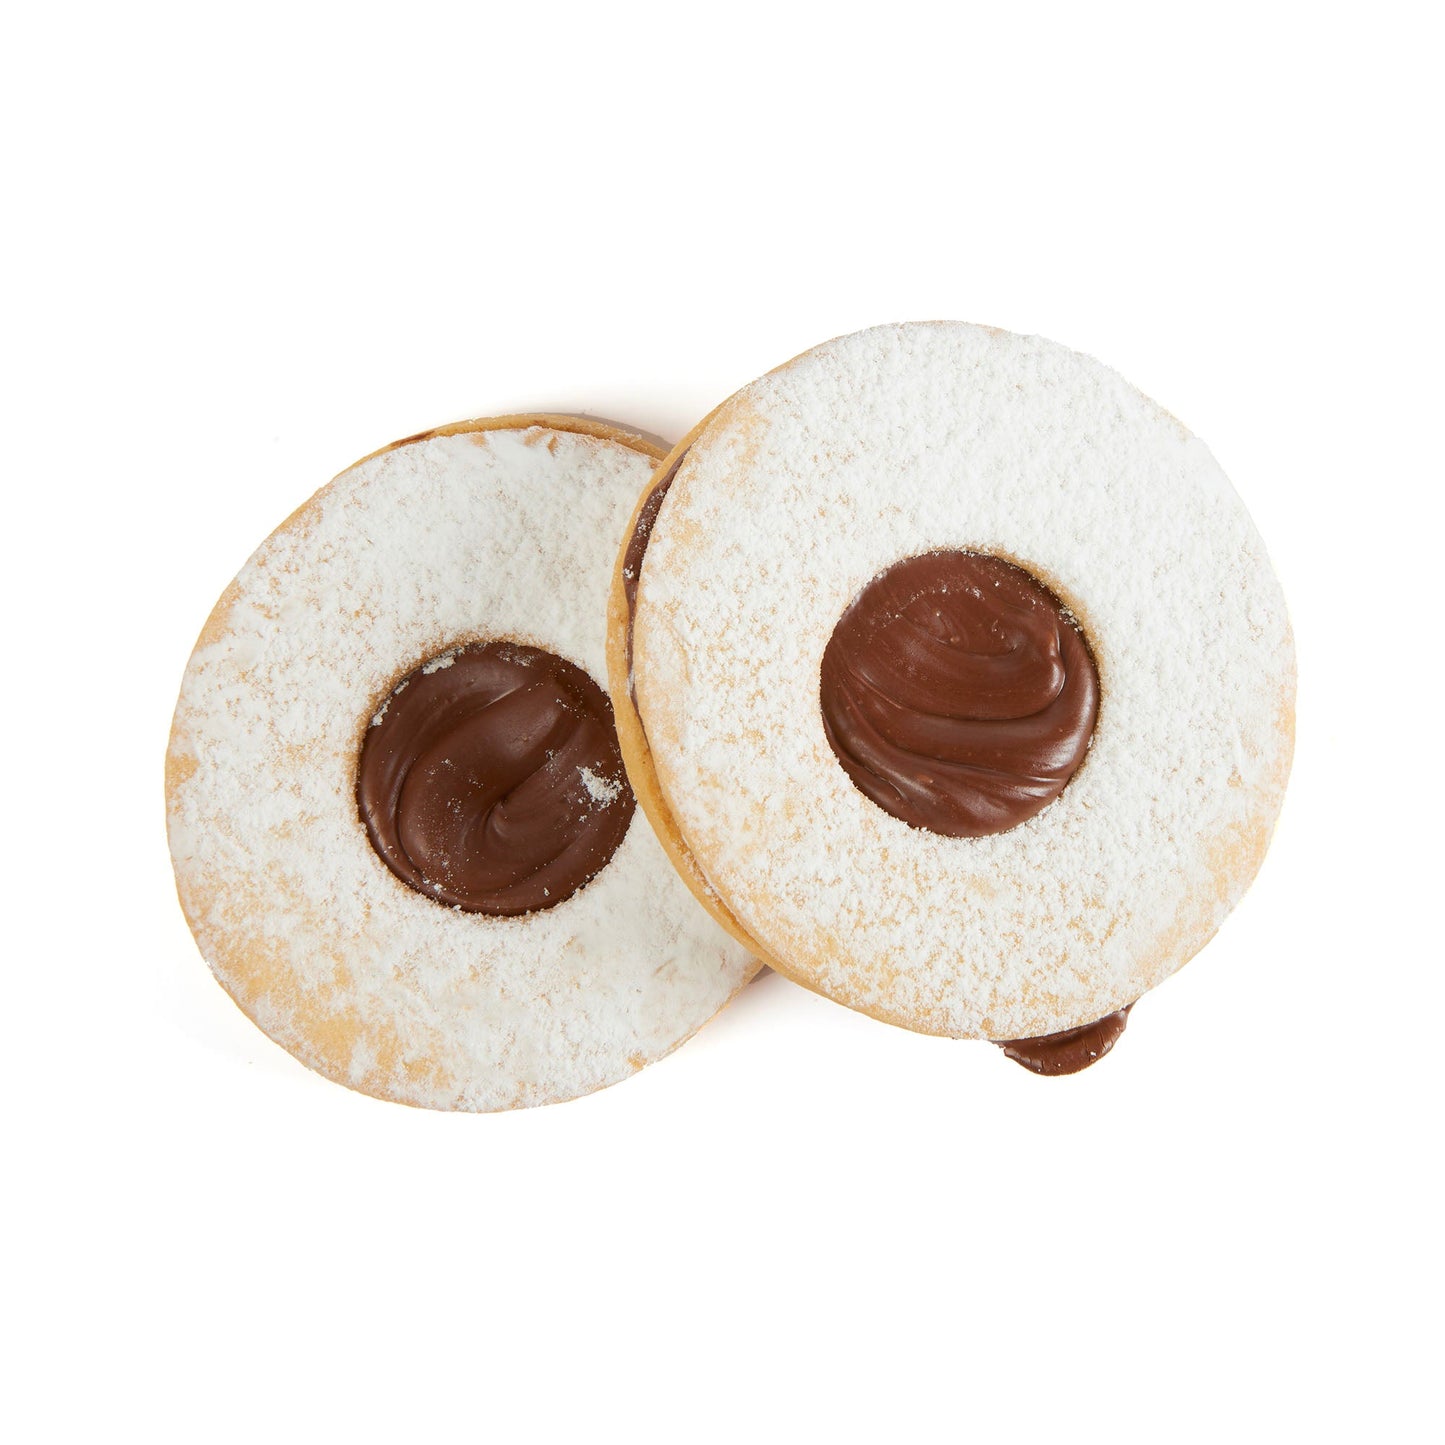 Nutella Occhi Di Bue Shortbread Cookies